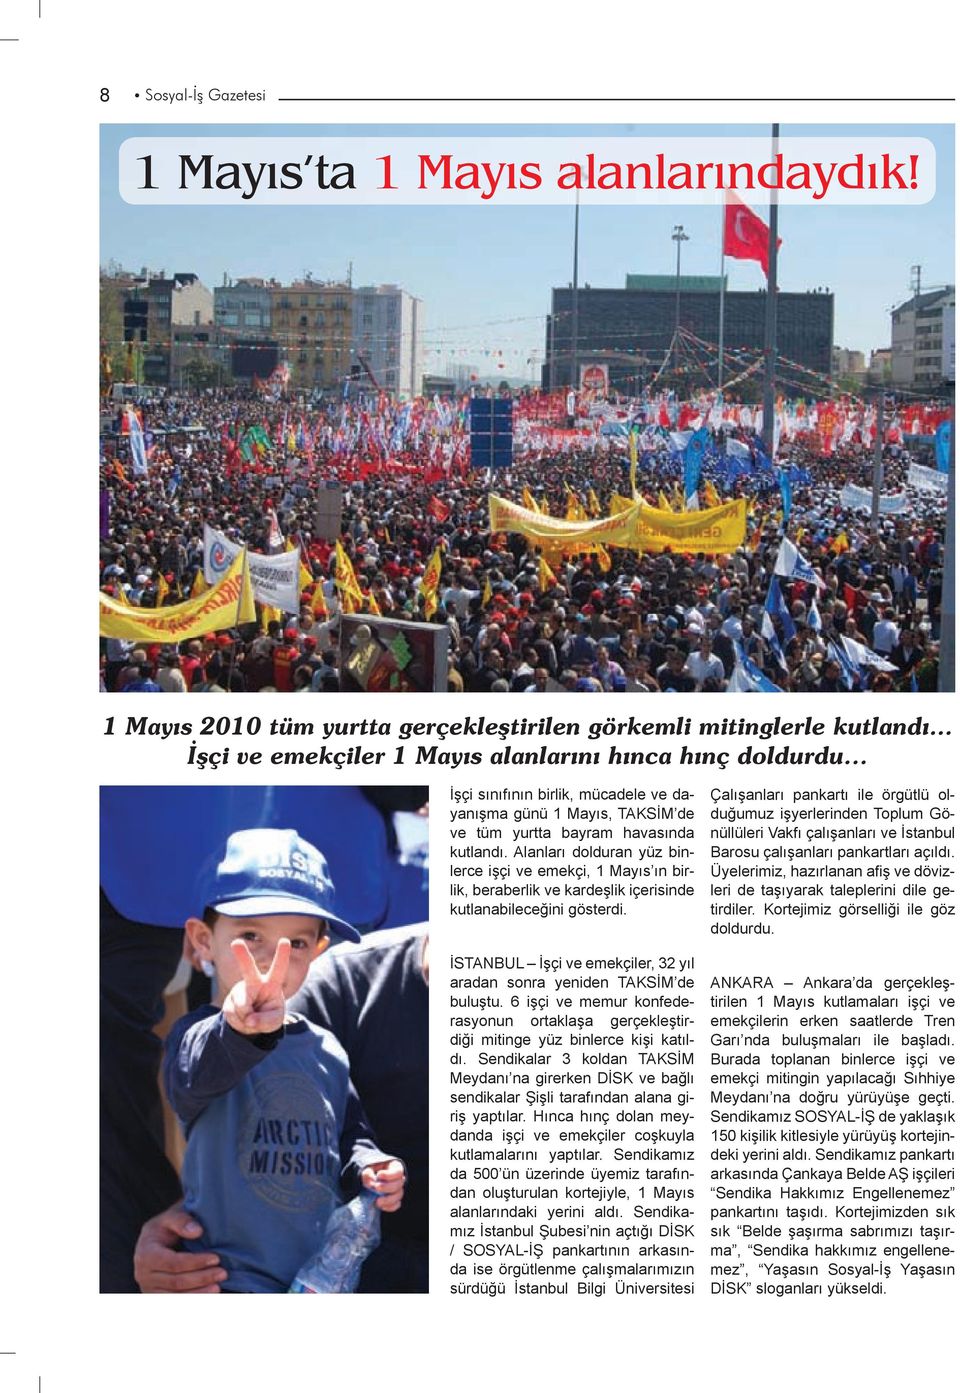 Alanları dolduran yüz binlerce işçi ve emekçi, 1 Mayıs ın birlik, beraberlik ve kardeşlik içerisinde kutlanabileceğini gösterdi.